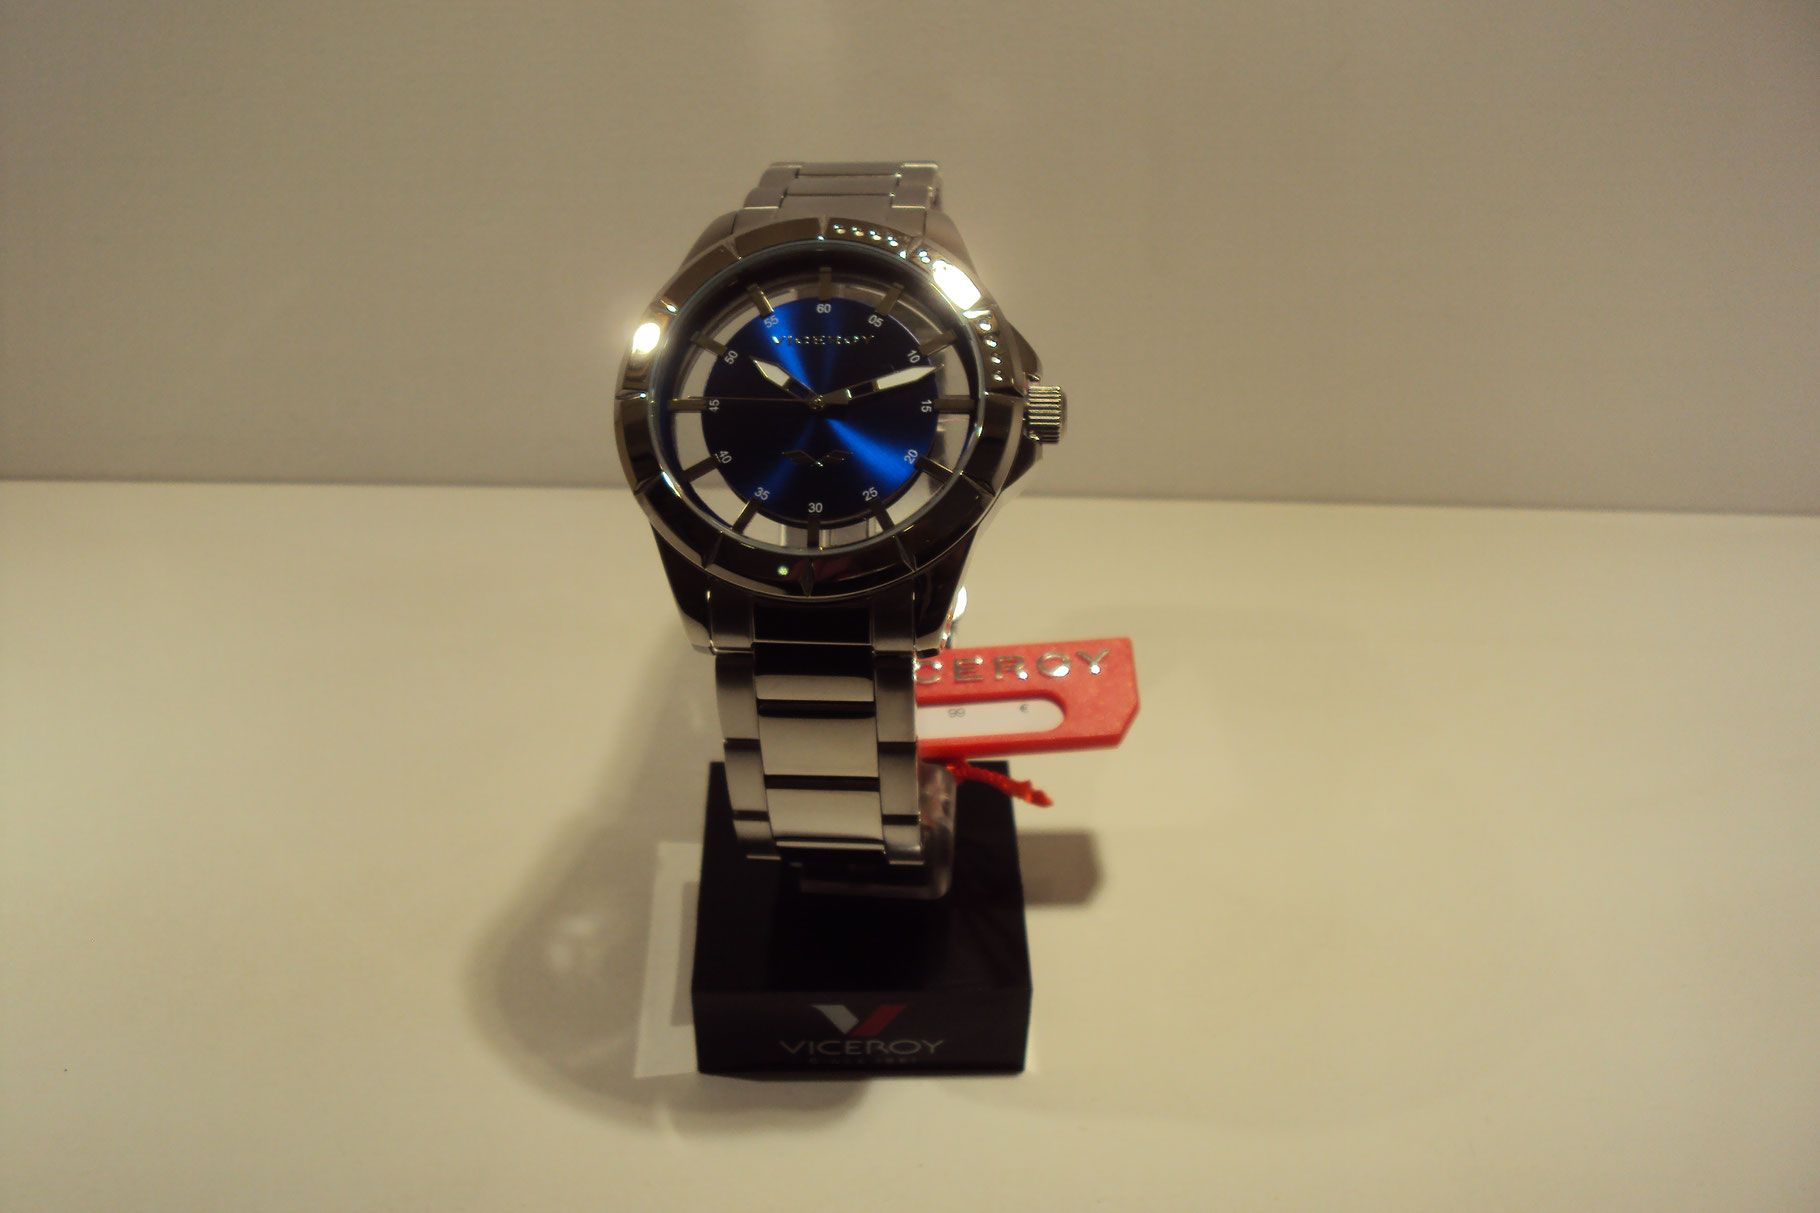 Reloj Viceroy de hombre esfera transparente y azul eléctrico.99€